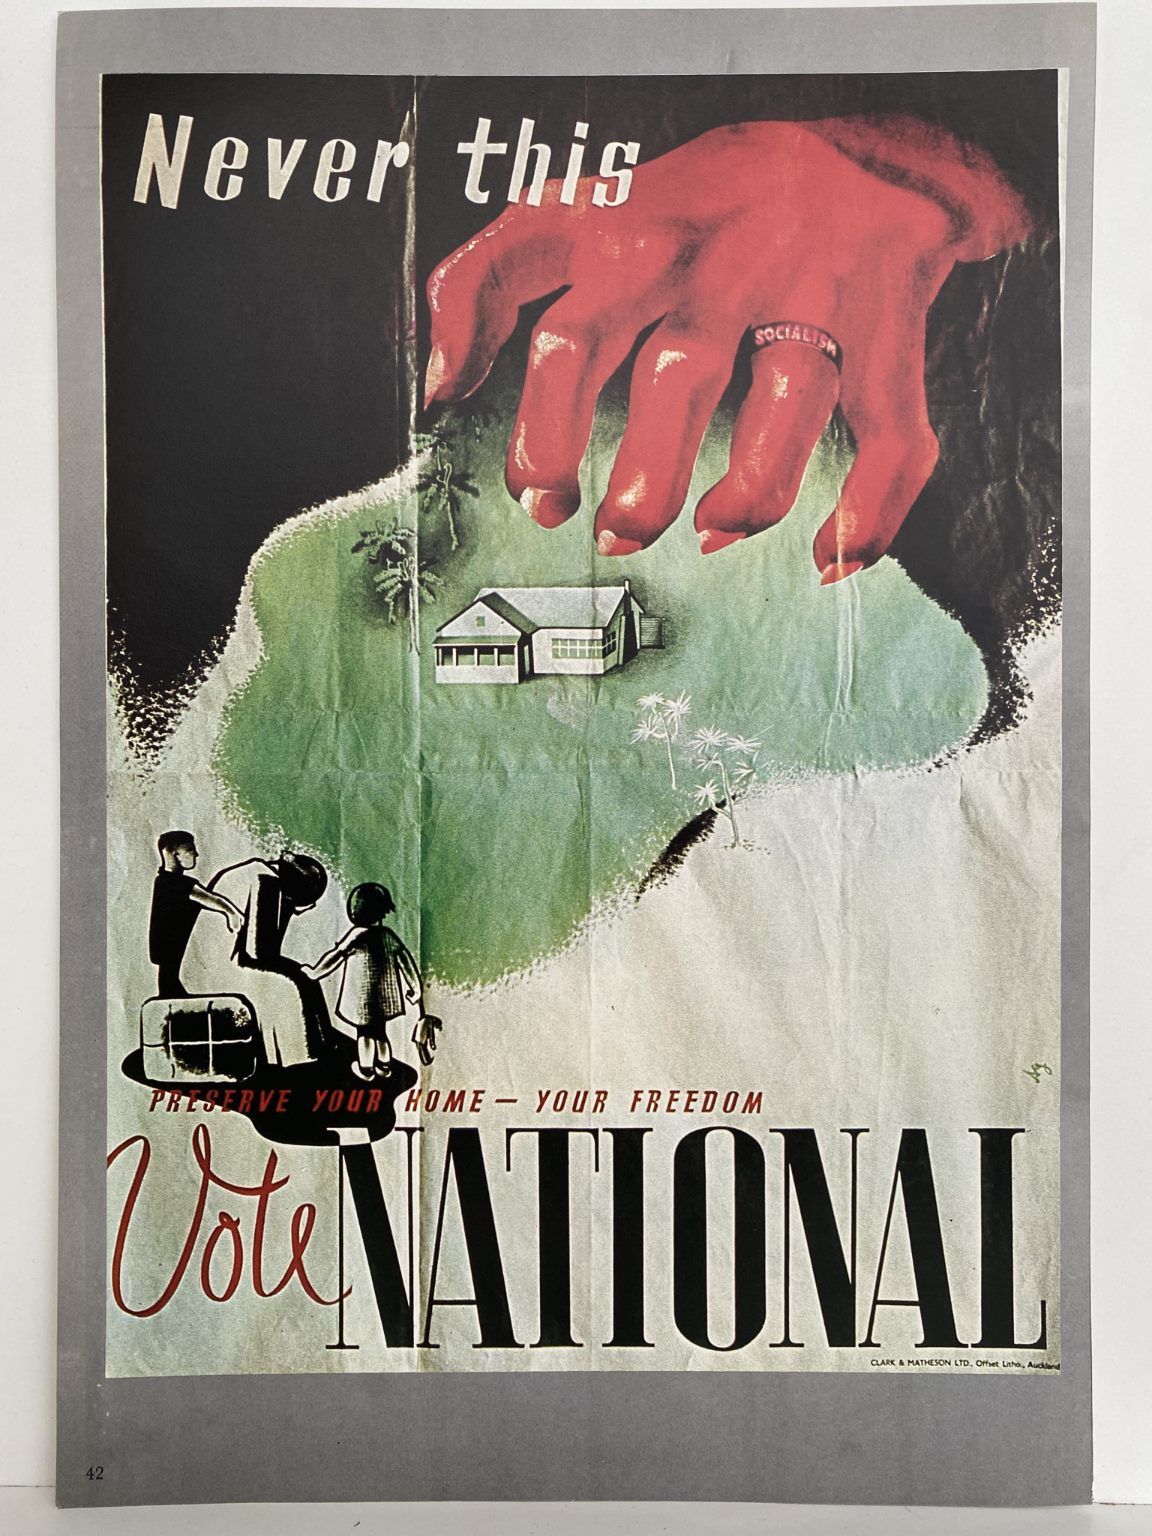 VINTAGE POSTER: Vote National 1938